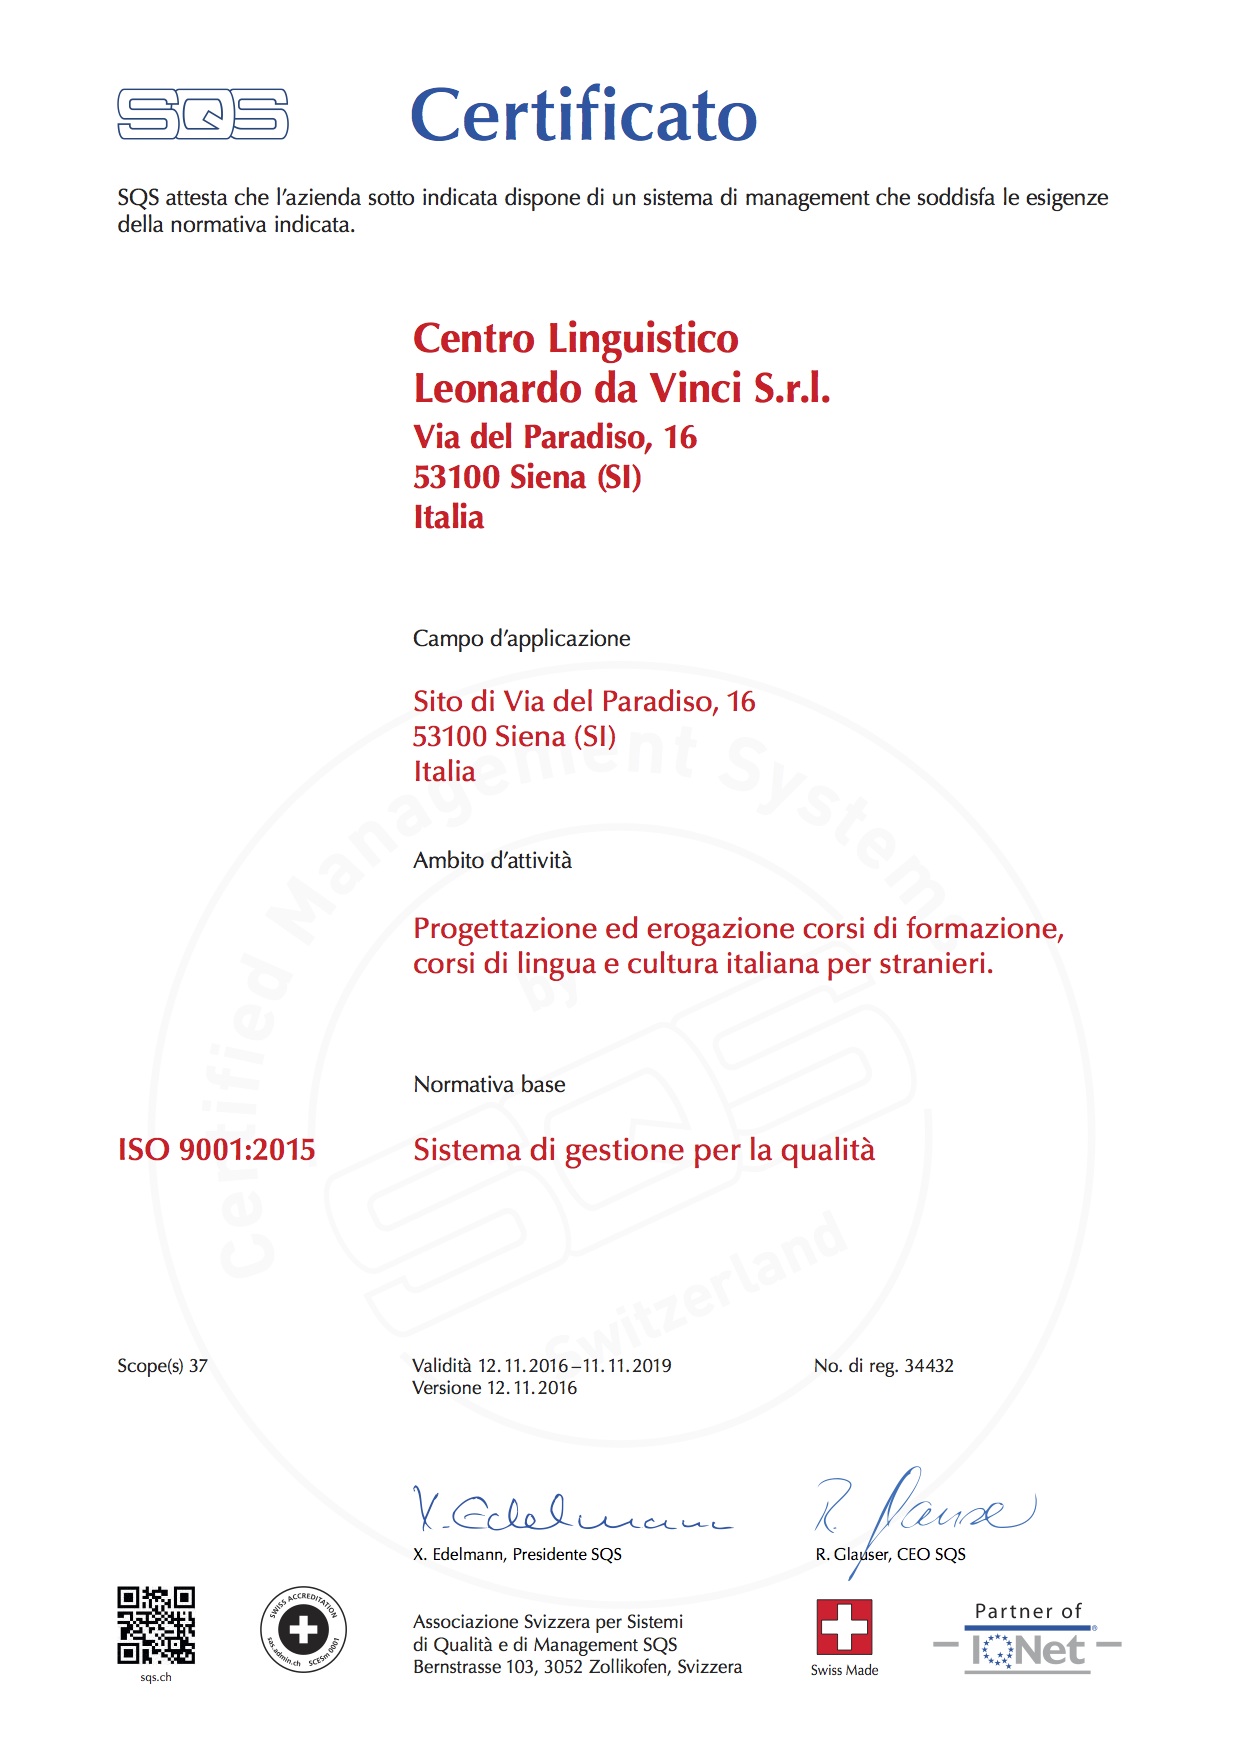 Notre école italienne à Sienne est certifiée conforme à la norme ISO 9001: 2015, la norme internationalement reconnue pour les systèmes de gestion de la qualité